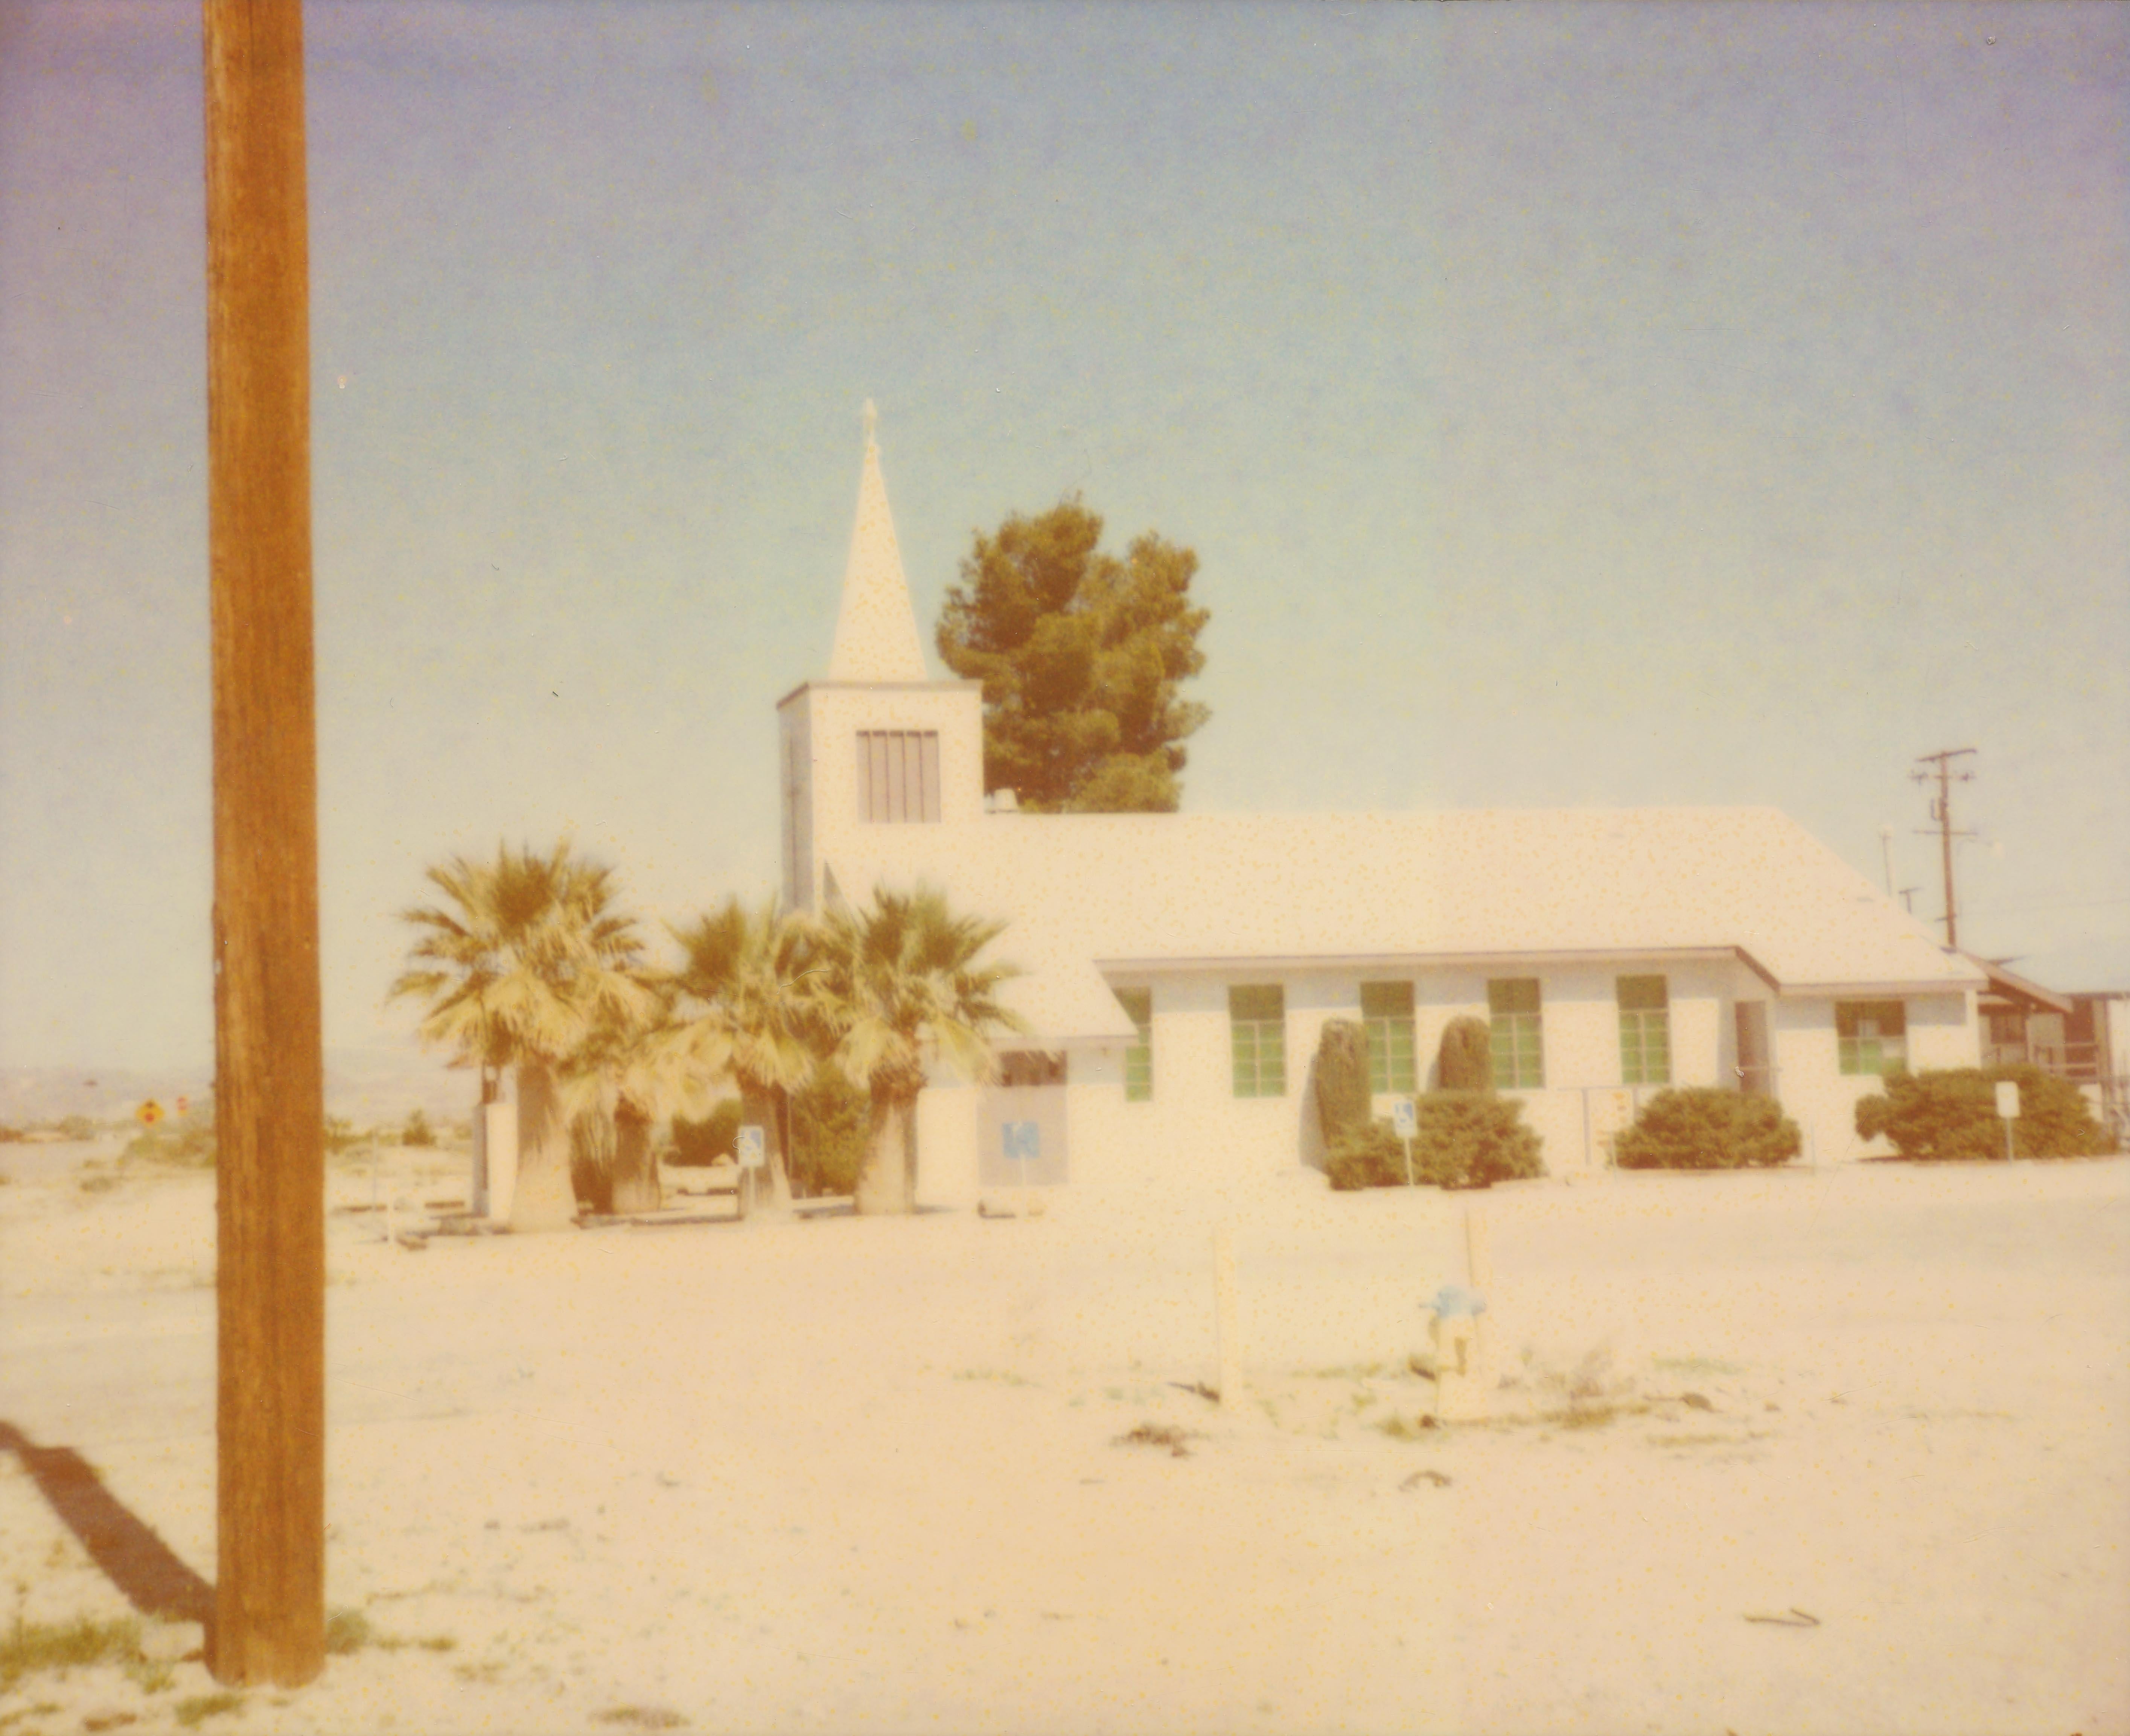 Stefanie Schneider Landscape Photograph - Sunday Church (Sidewinder) - 21st Century, Polaroid, Contemporary